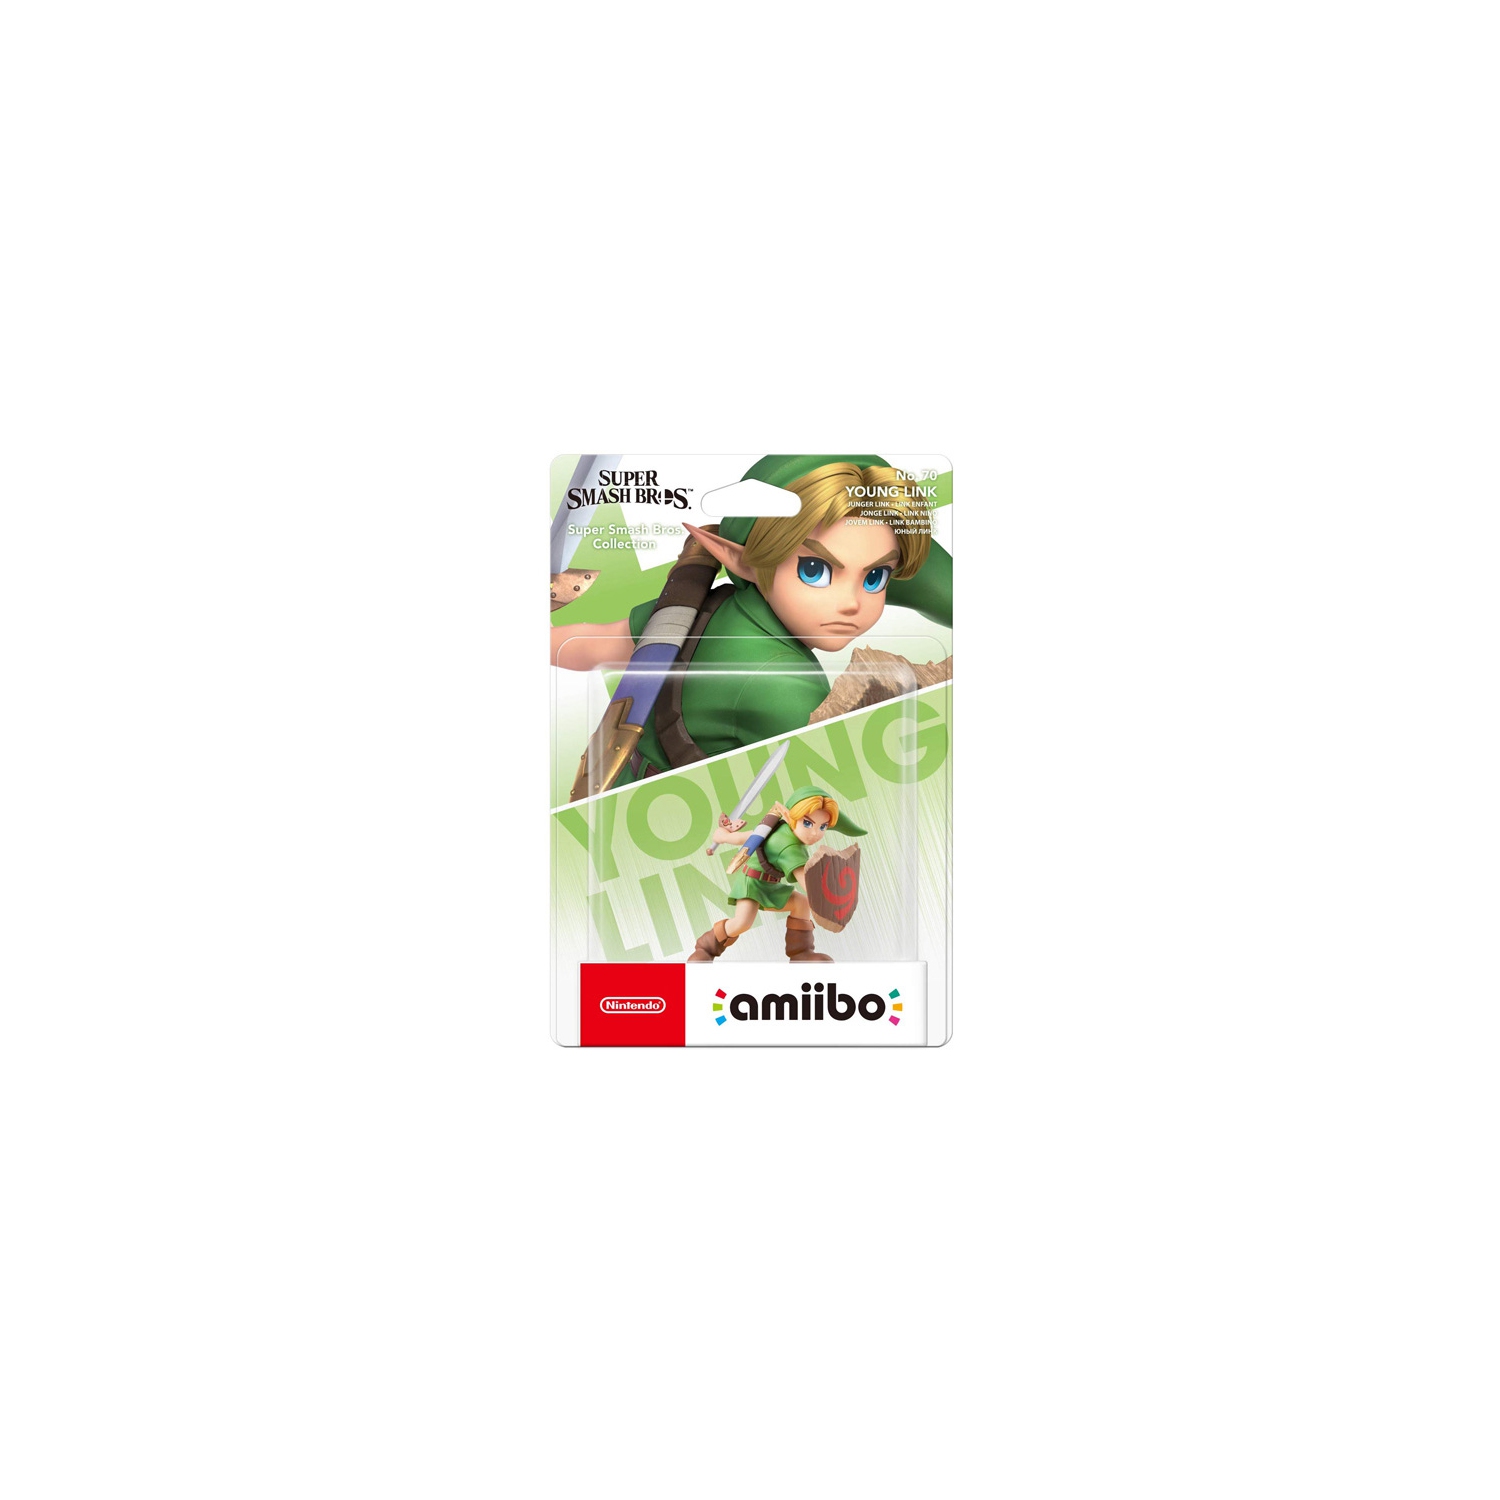 Young Link - Super Smash Bros Series - amiibo (EU Import)